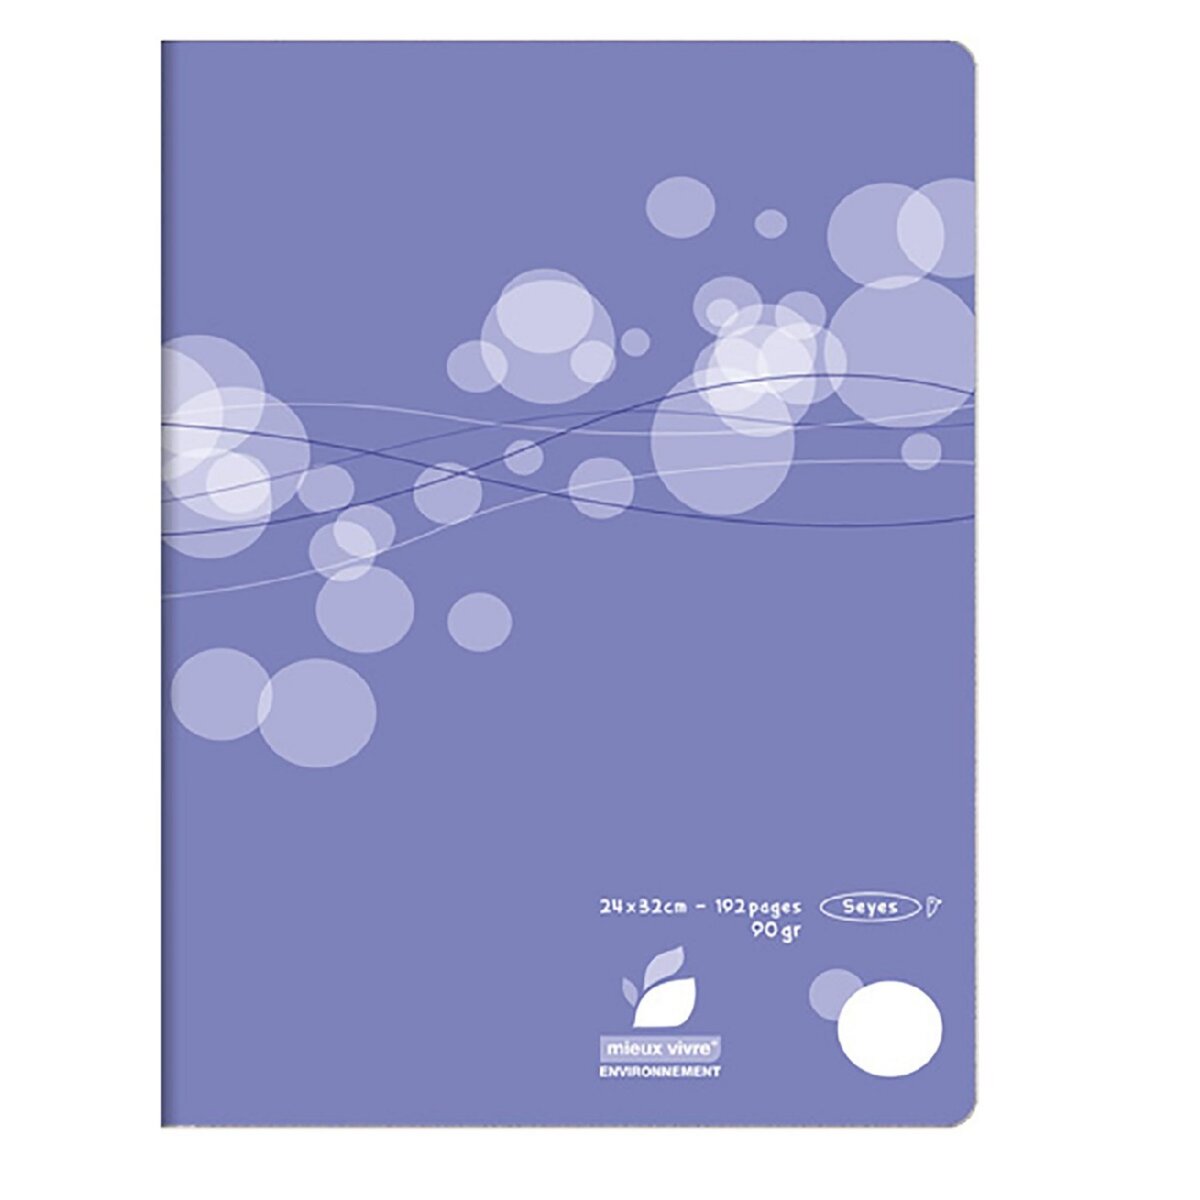 AUCHAN Cahier piqué polypro 24x32cm 192 pages grands carreaux Seyes violet motif ronds